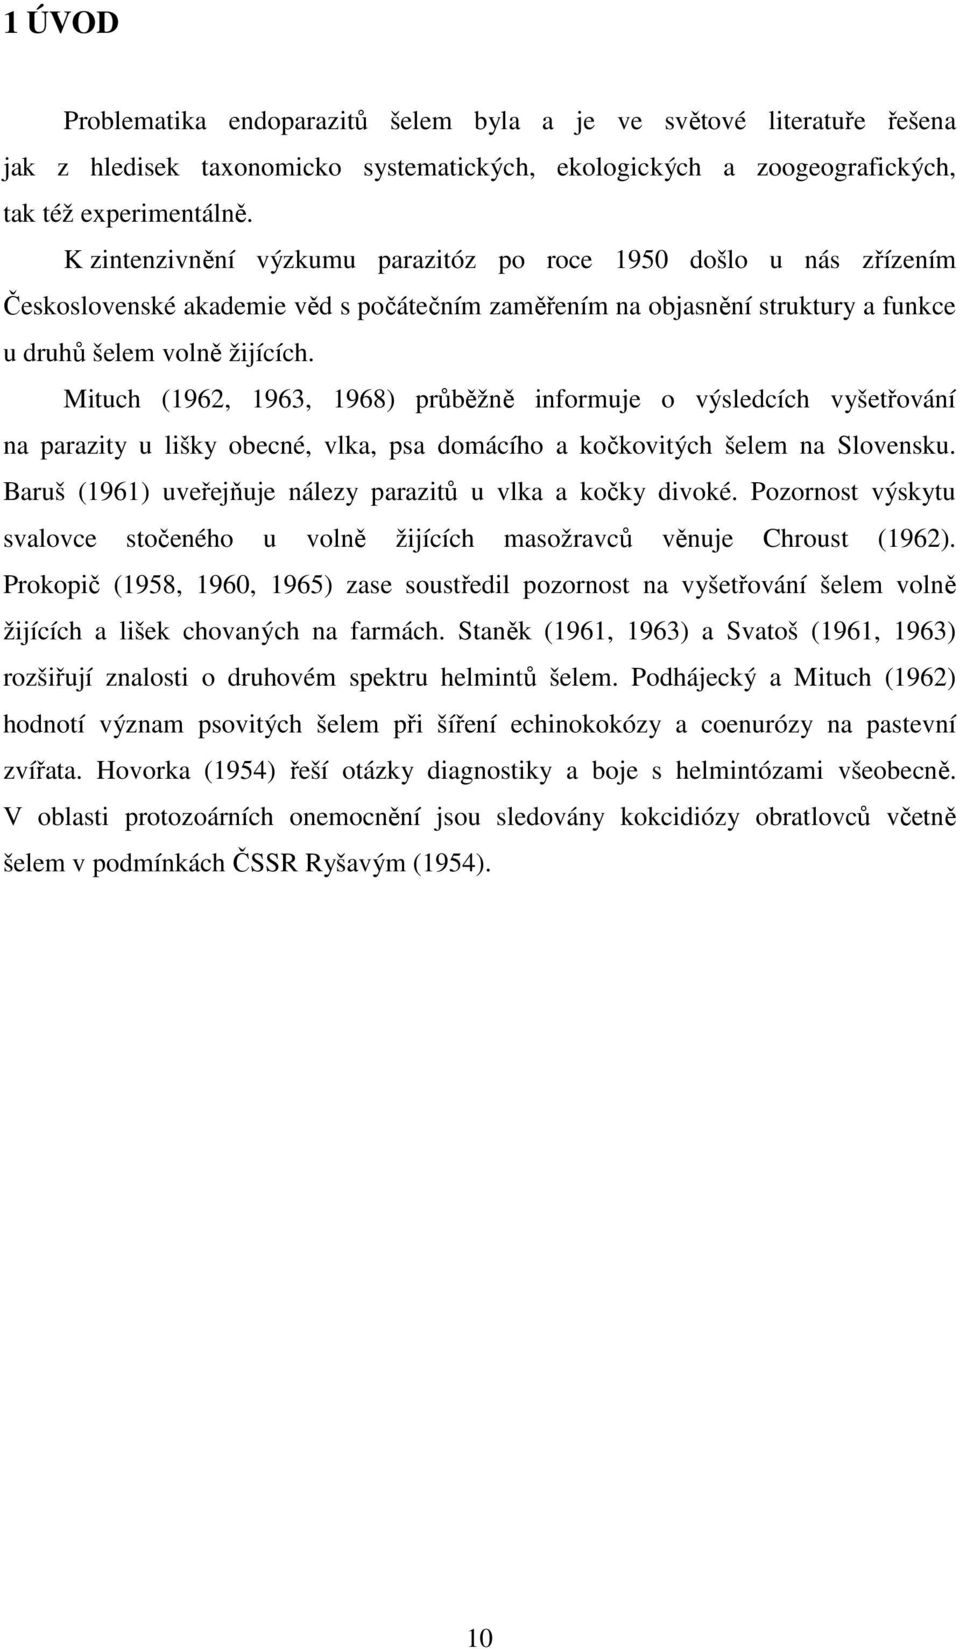 Mituch (1962, 1963, 1968) průběžně informuje o výsledcích vyšetřování na parazity u lišky obecné, vlka, psa domácího a kočkovitých šelem na Slovensku.